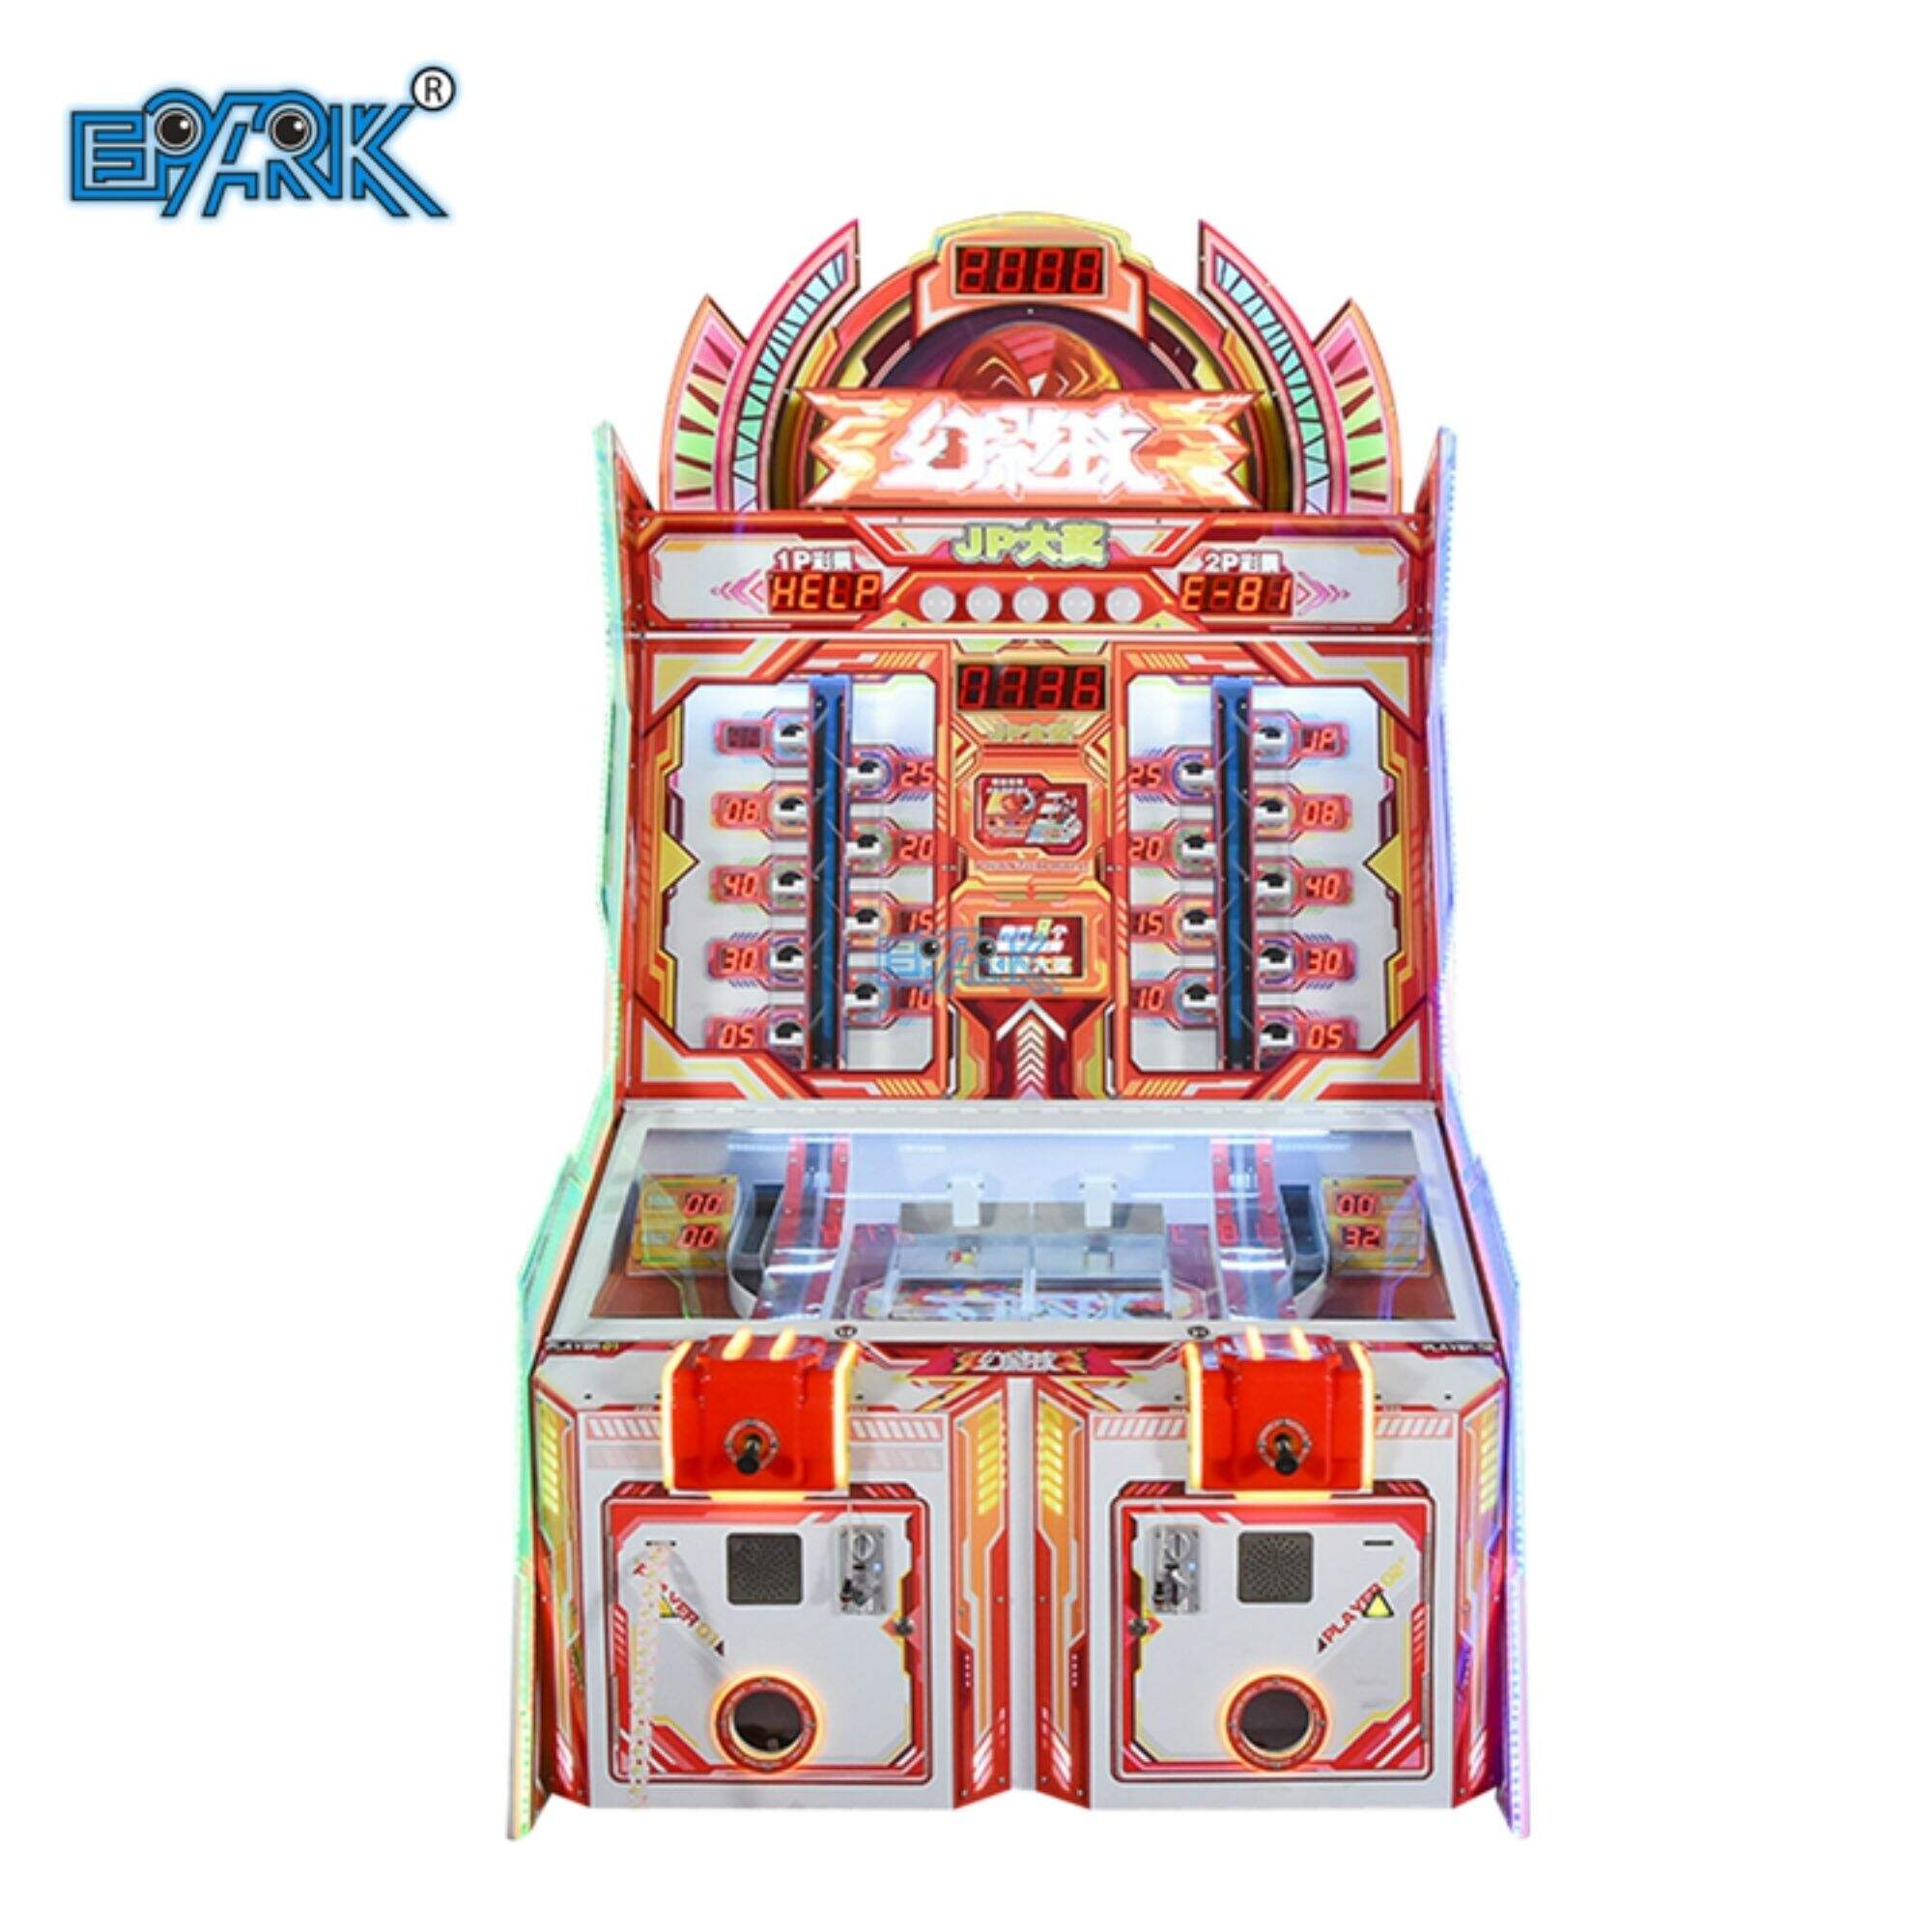 Münzbetriebene Spielautomaten, Arcade-Lotterieautomaten, Flipperautomaten